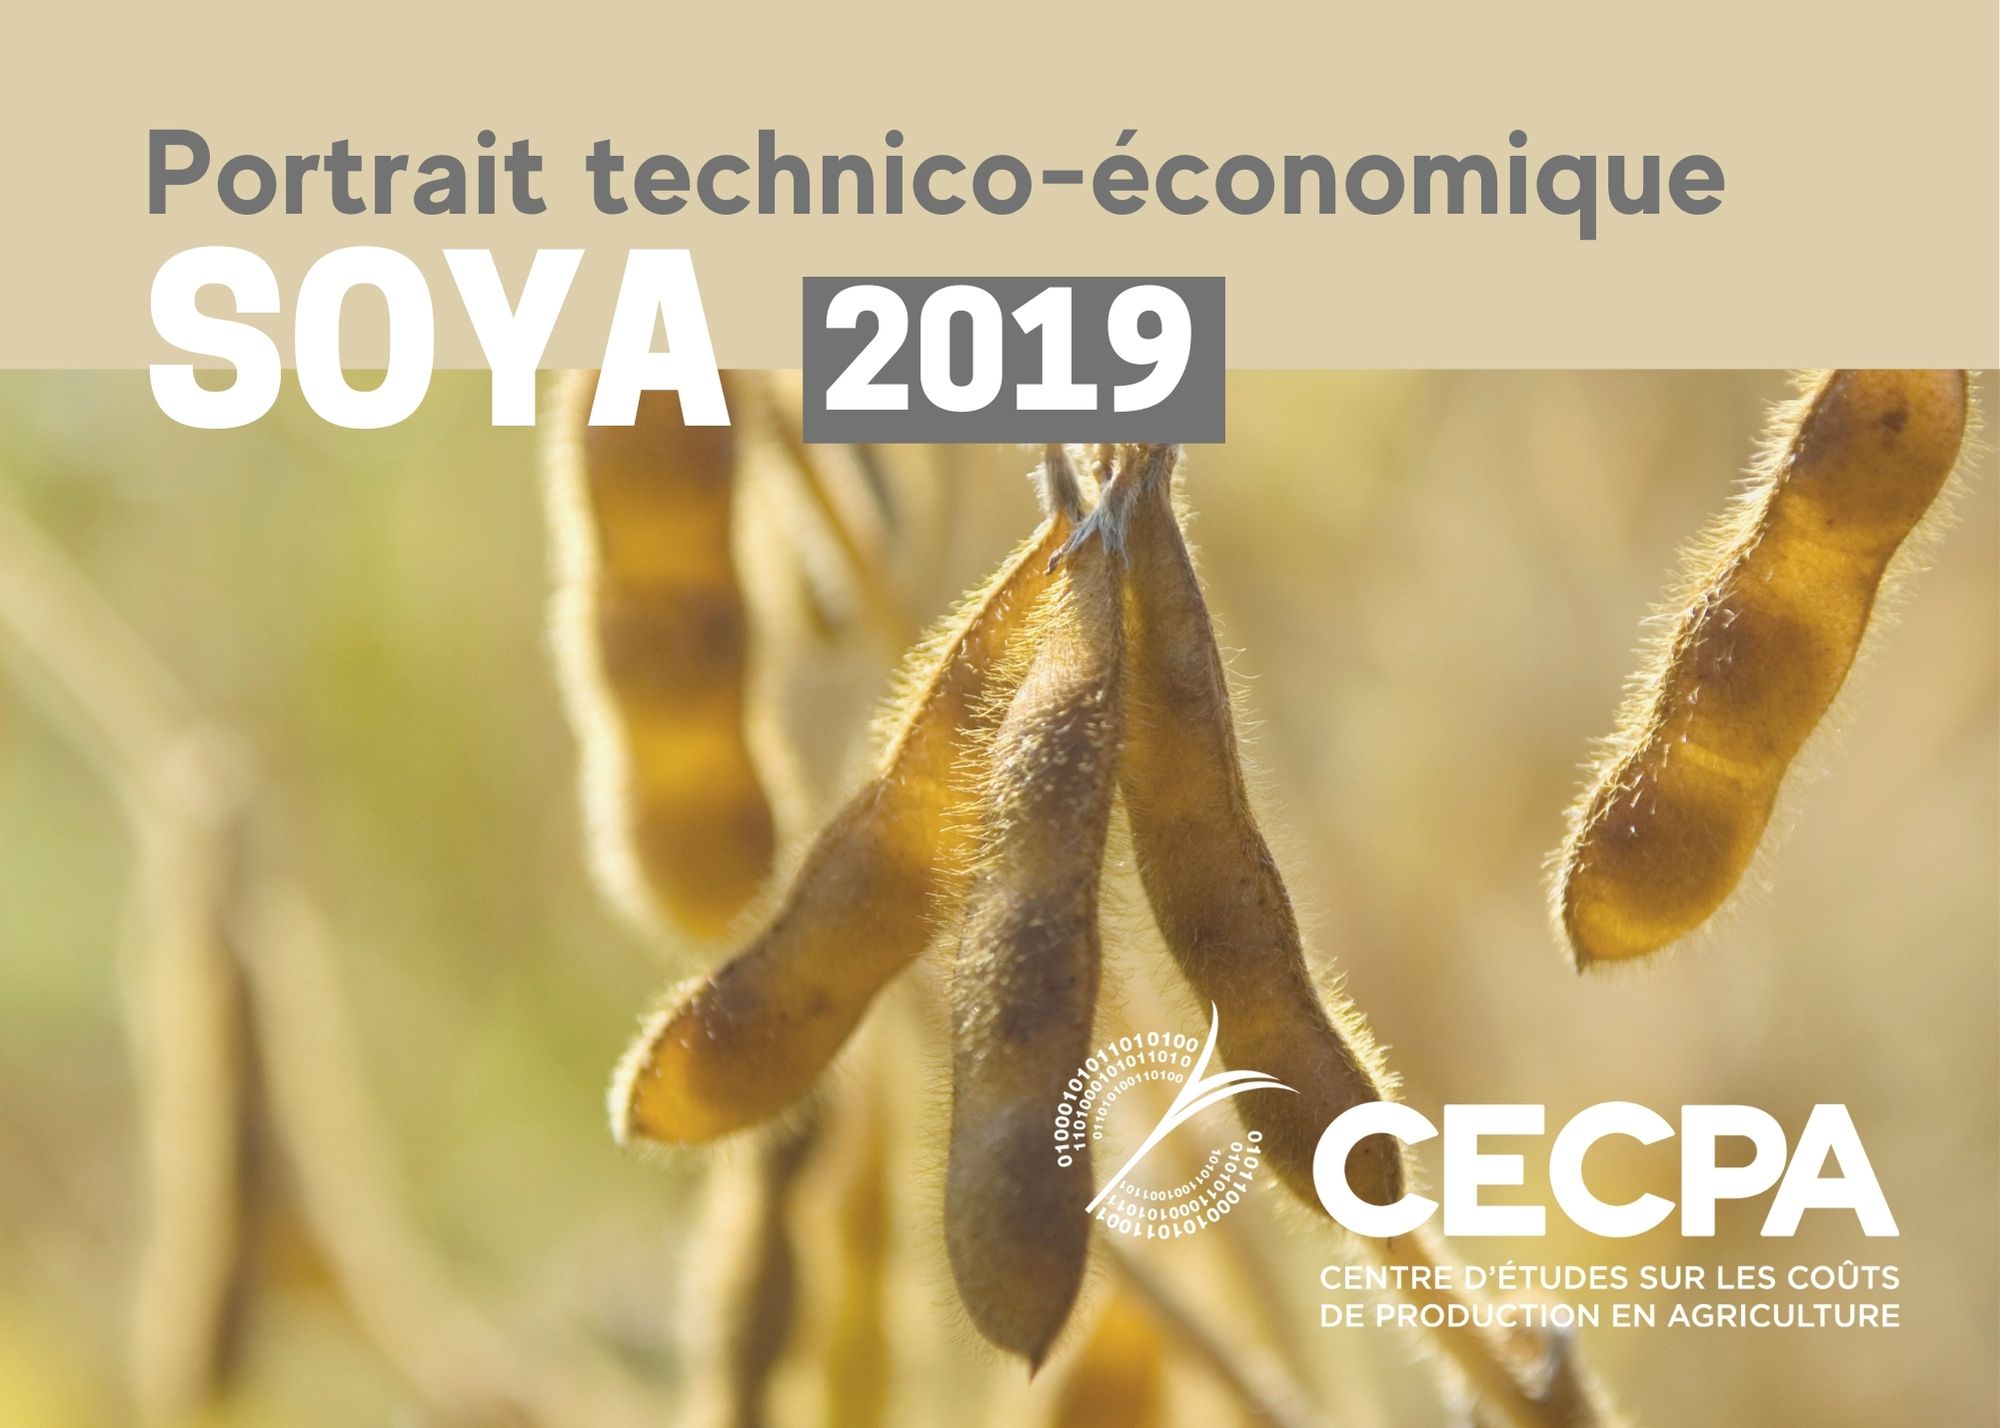 Inf. complémentaires : Portrait technico-économique - Soya 2019